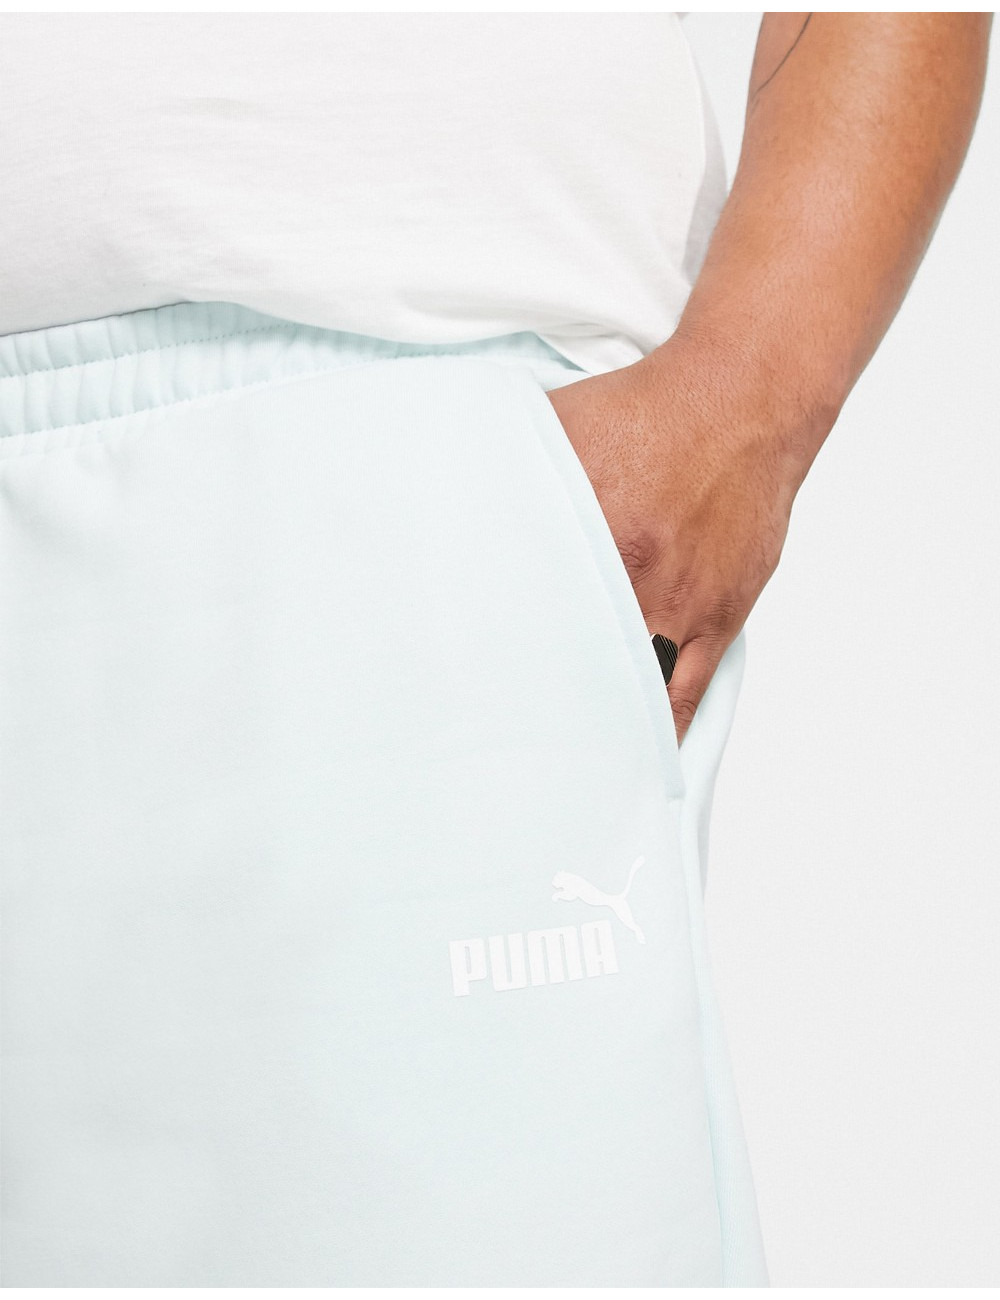 Puma Plus Essentials...